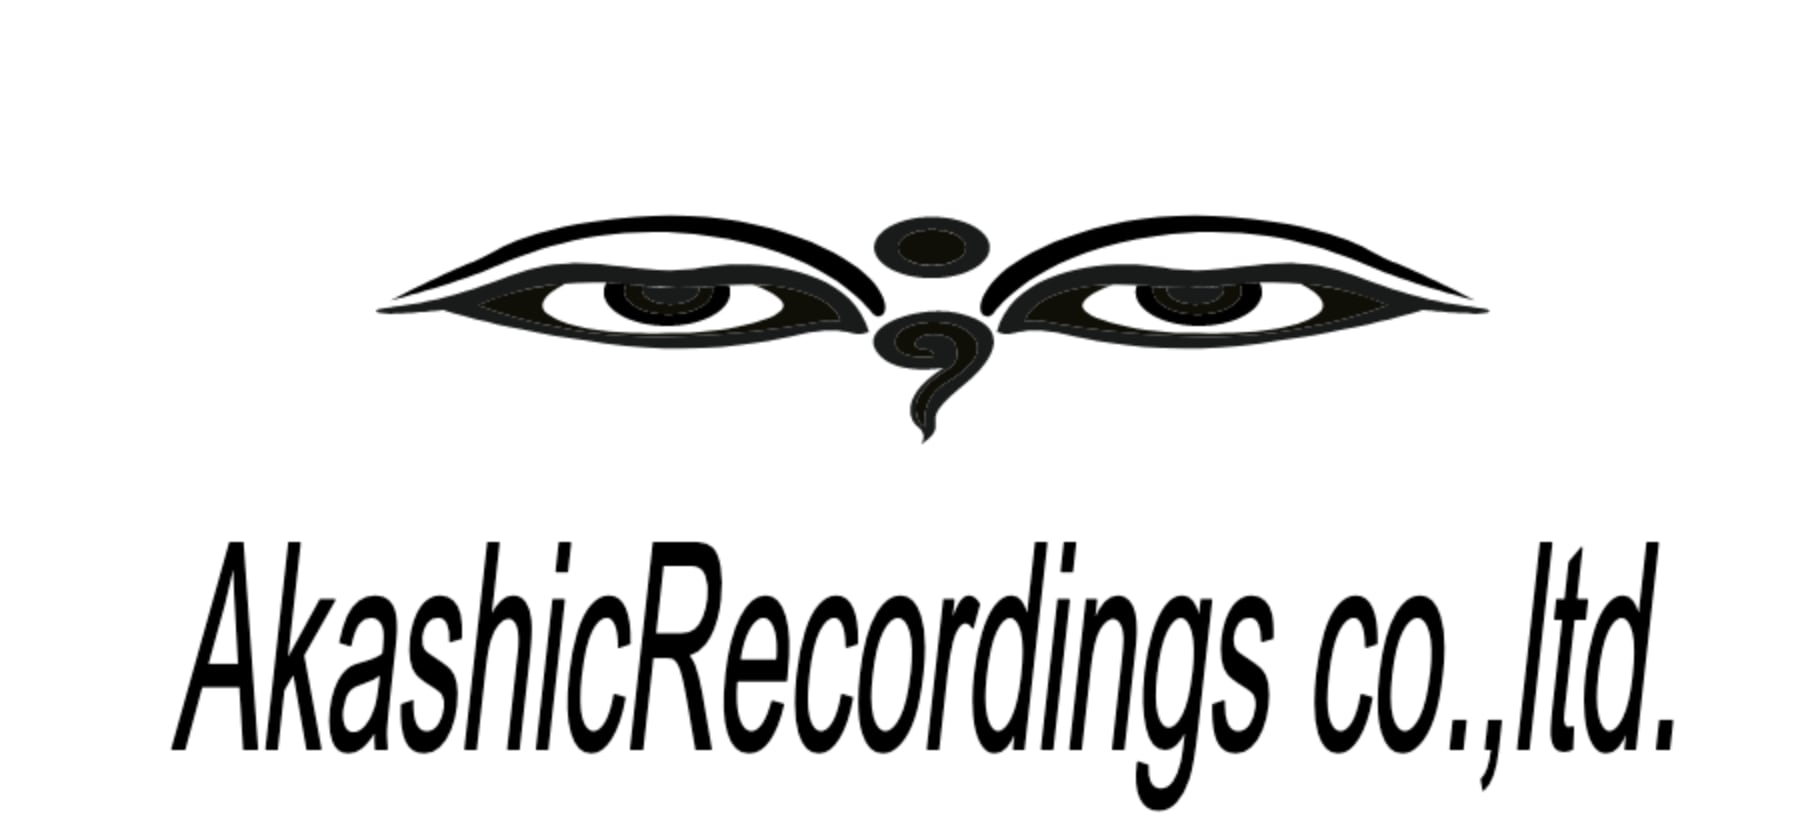 Akashic Recordings Co.,Ltd.